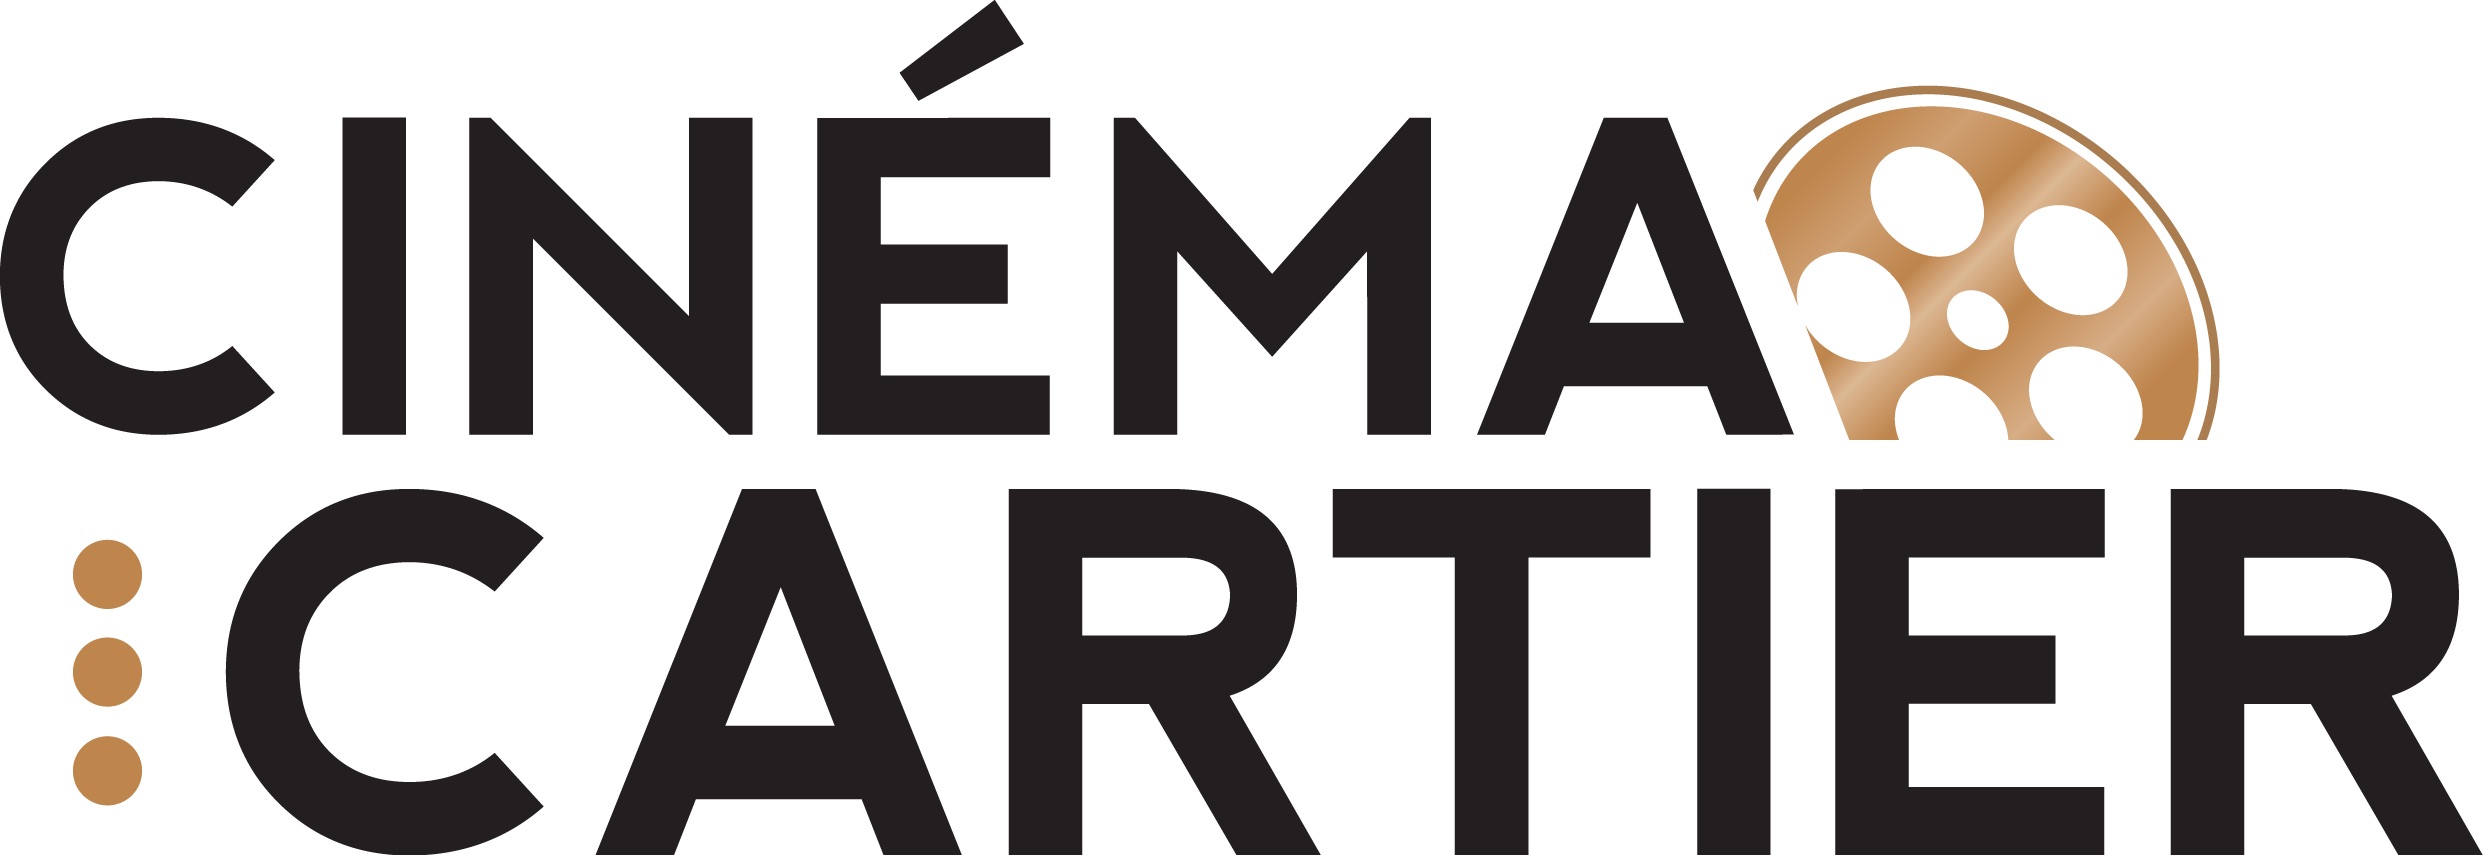 cinema cartier logo